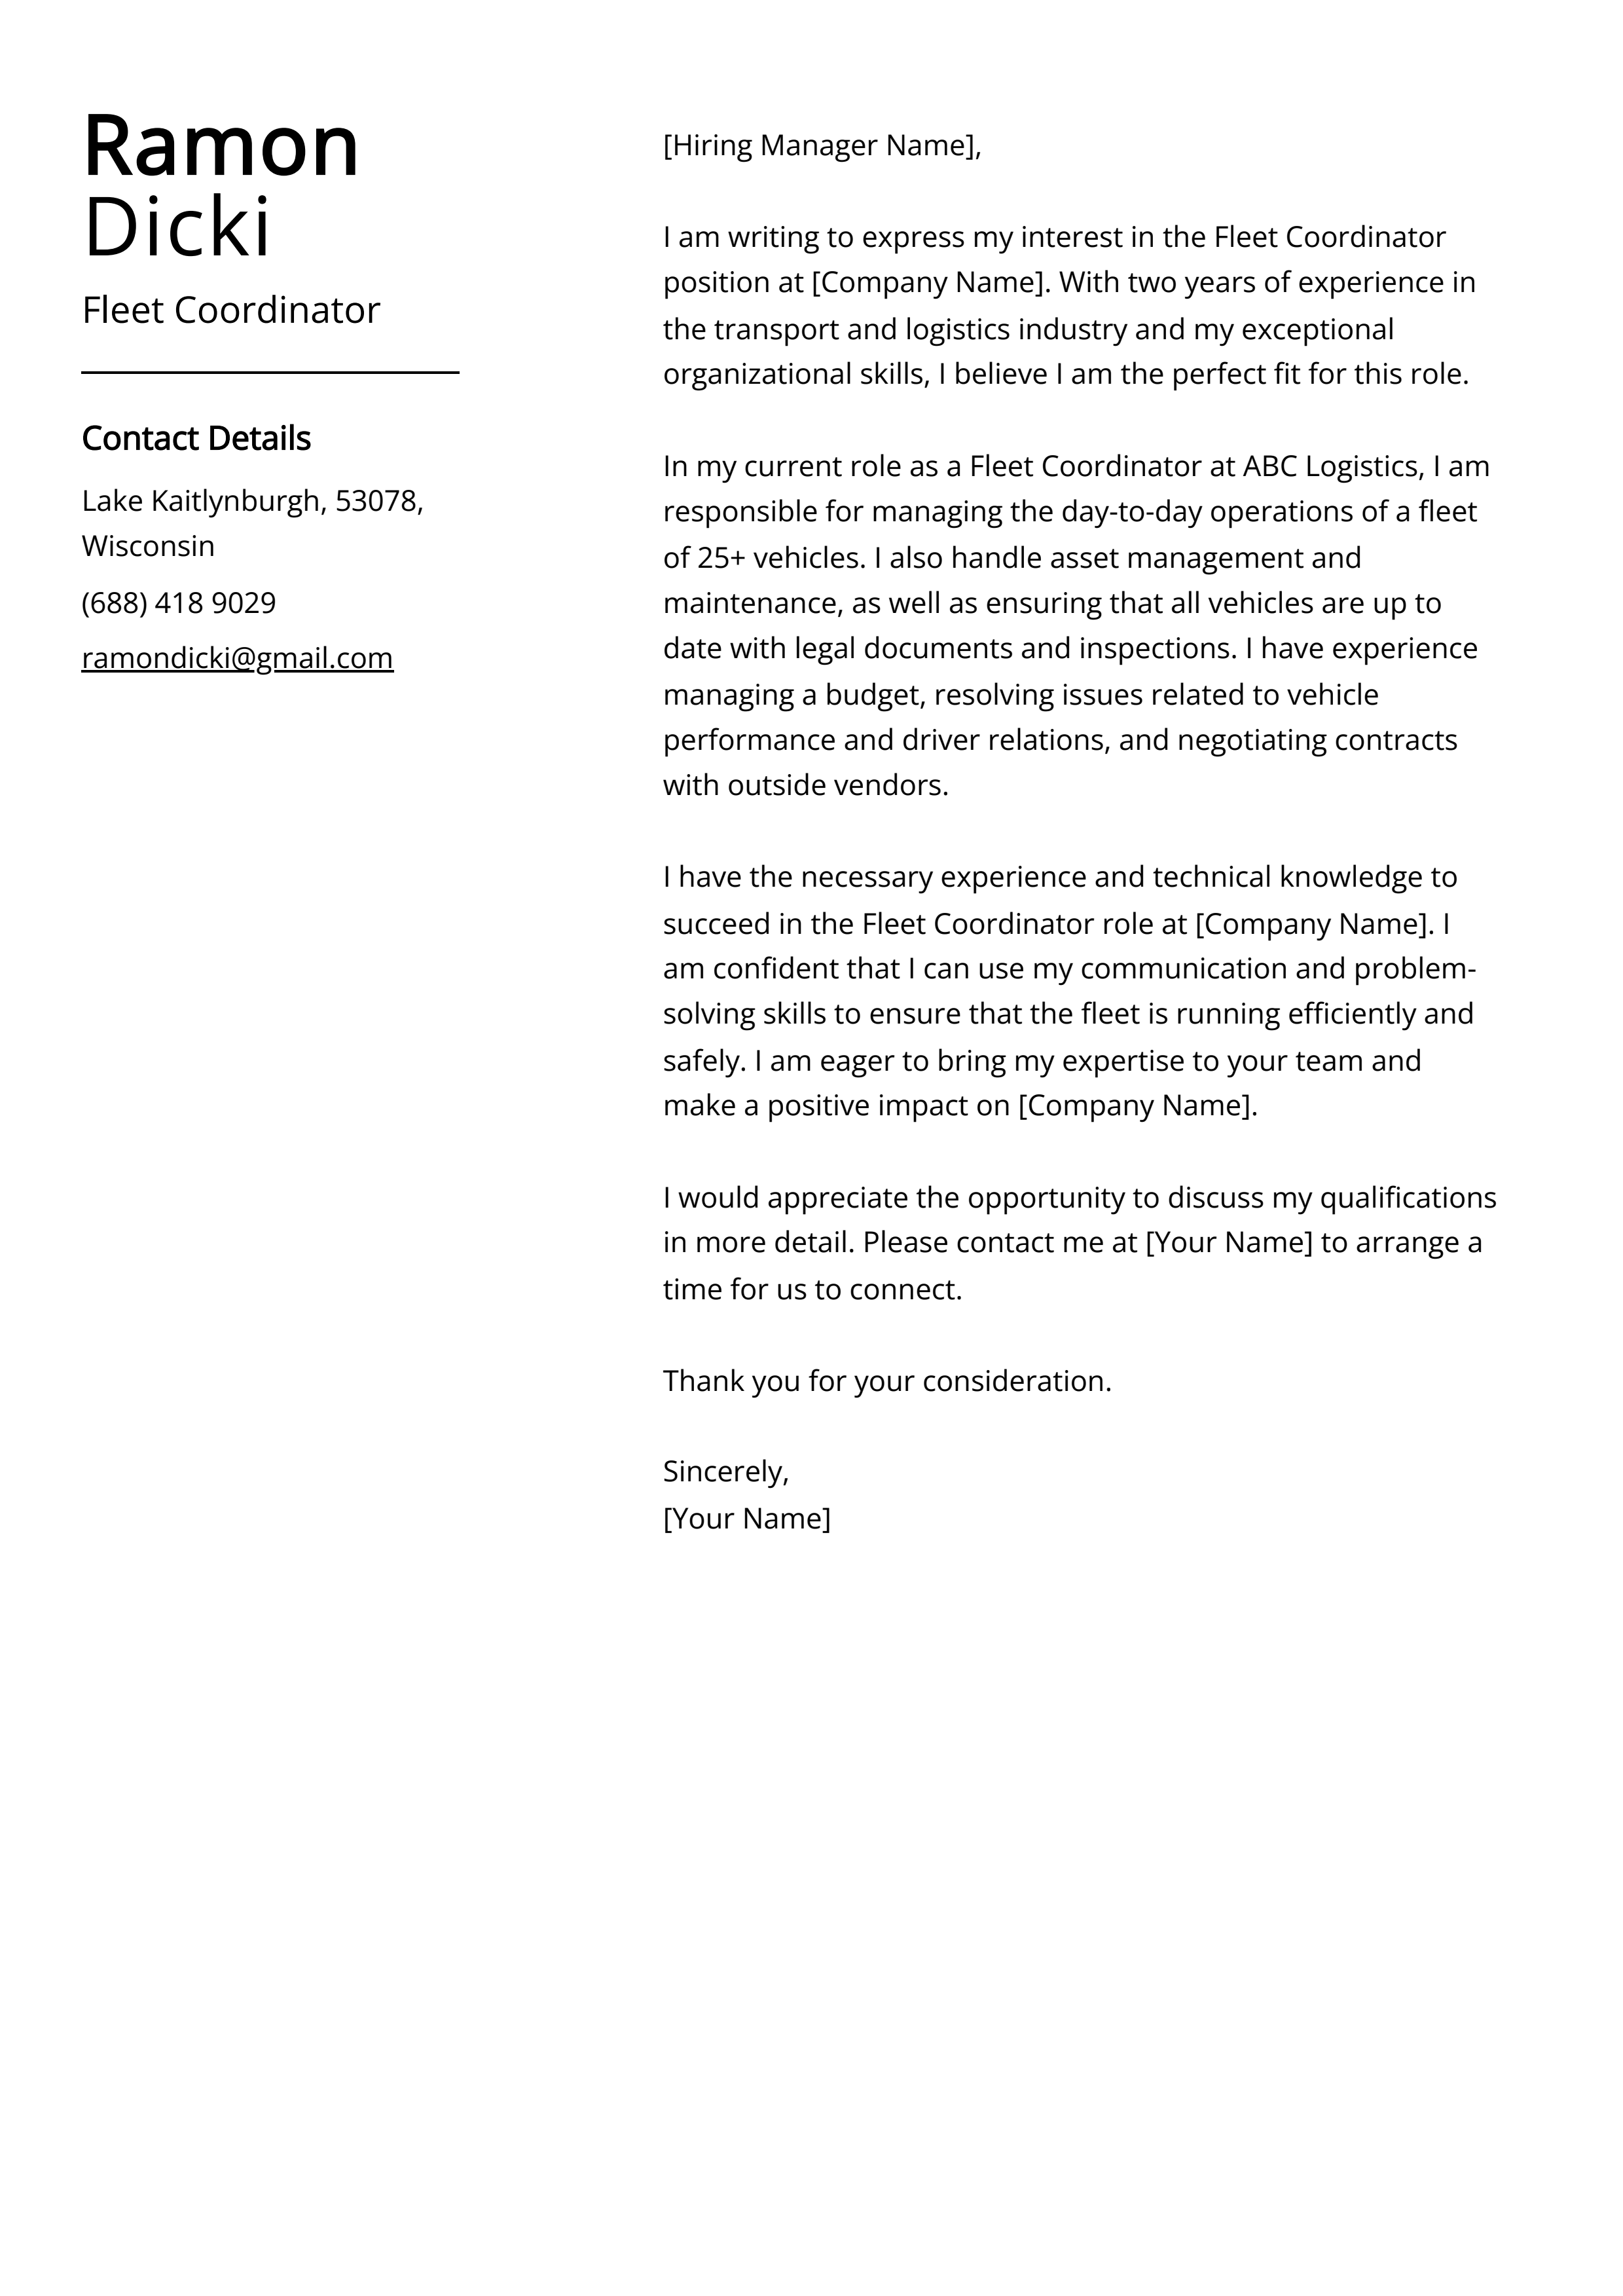 Fleet Coordinator Cover Letter Example